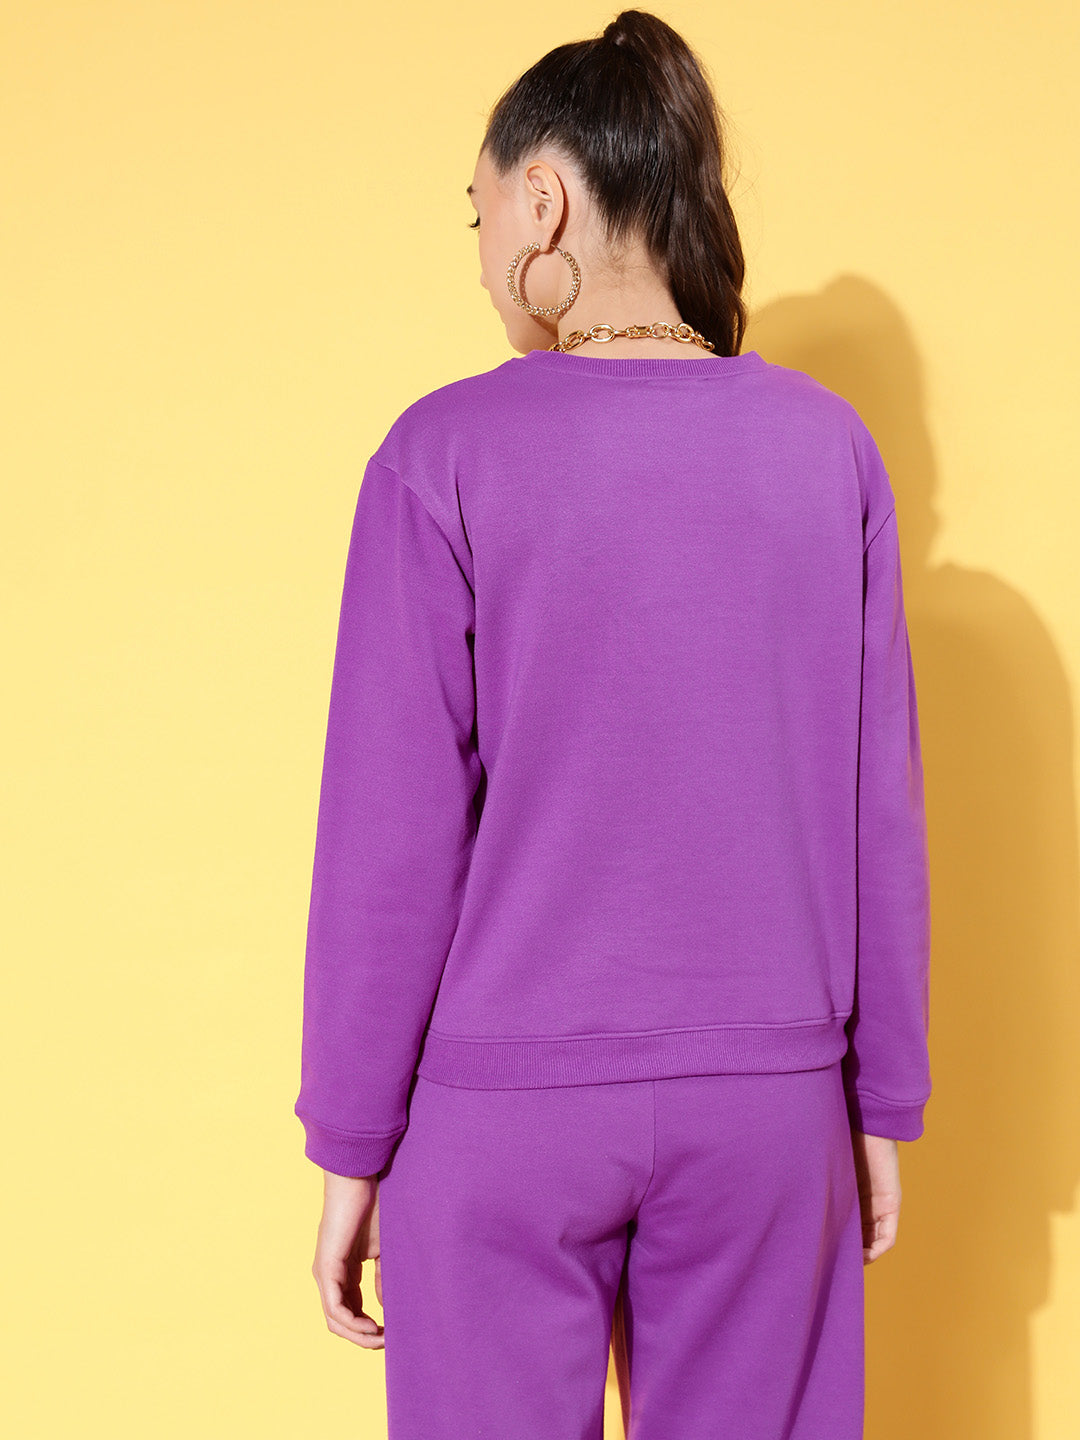 Purple Fleece JUST CHILL Sweatshirt-SASSAFRAS